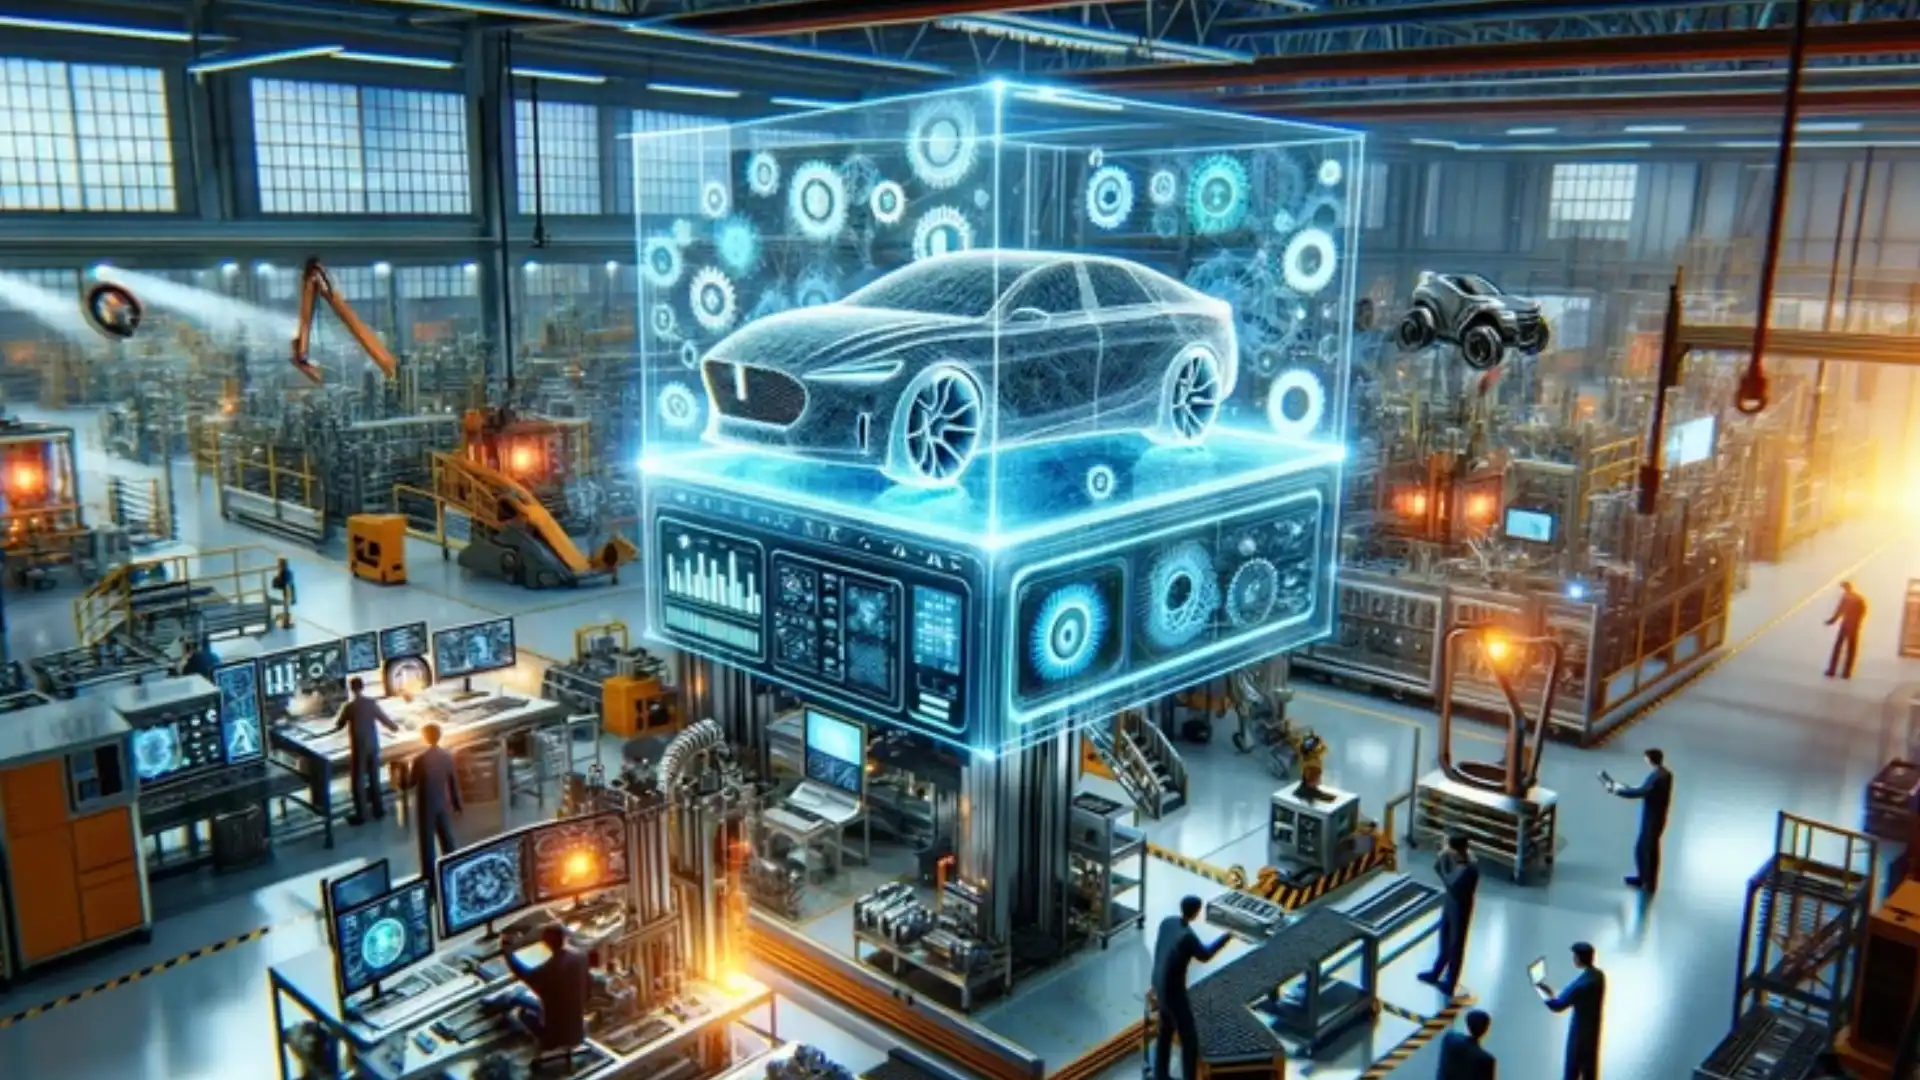 این تصویر نشان دهنده استفاده از هوش مصنوعی برای طراحی و تولید خودروهای خودران می باشد